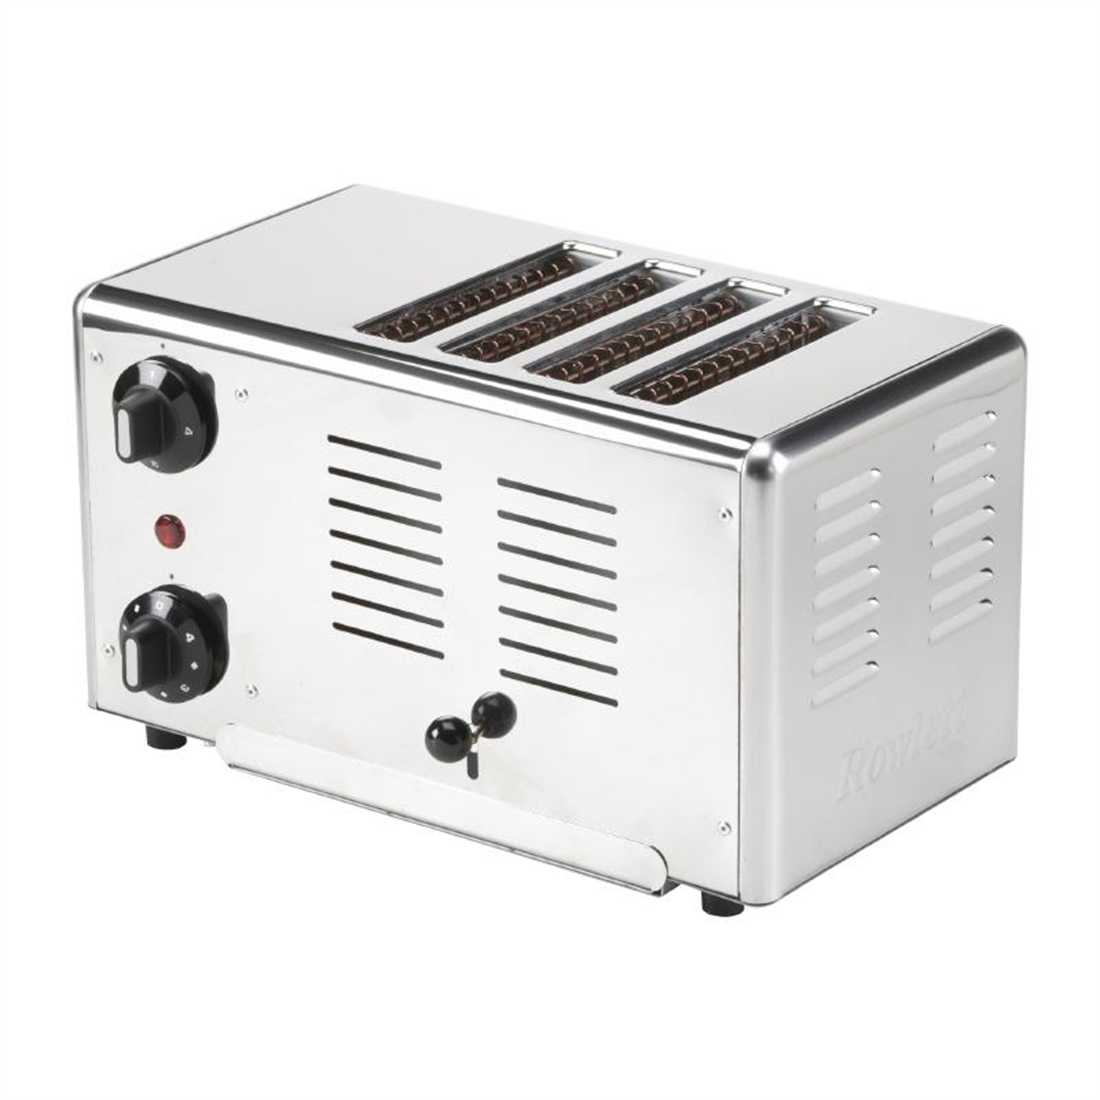 Rowlett Premier 4 Slot Toaster